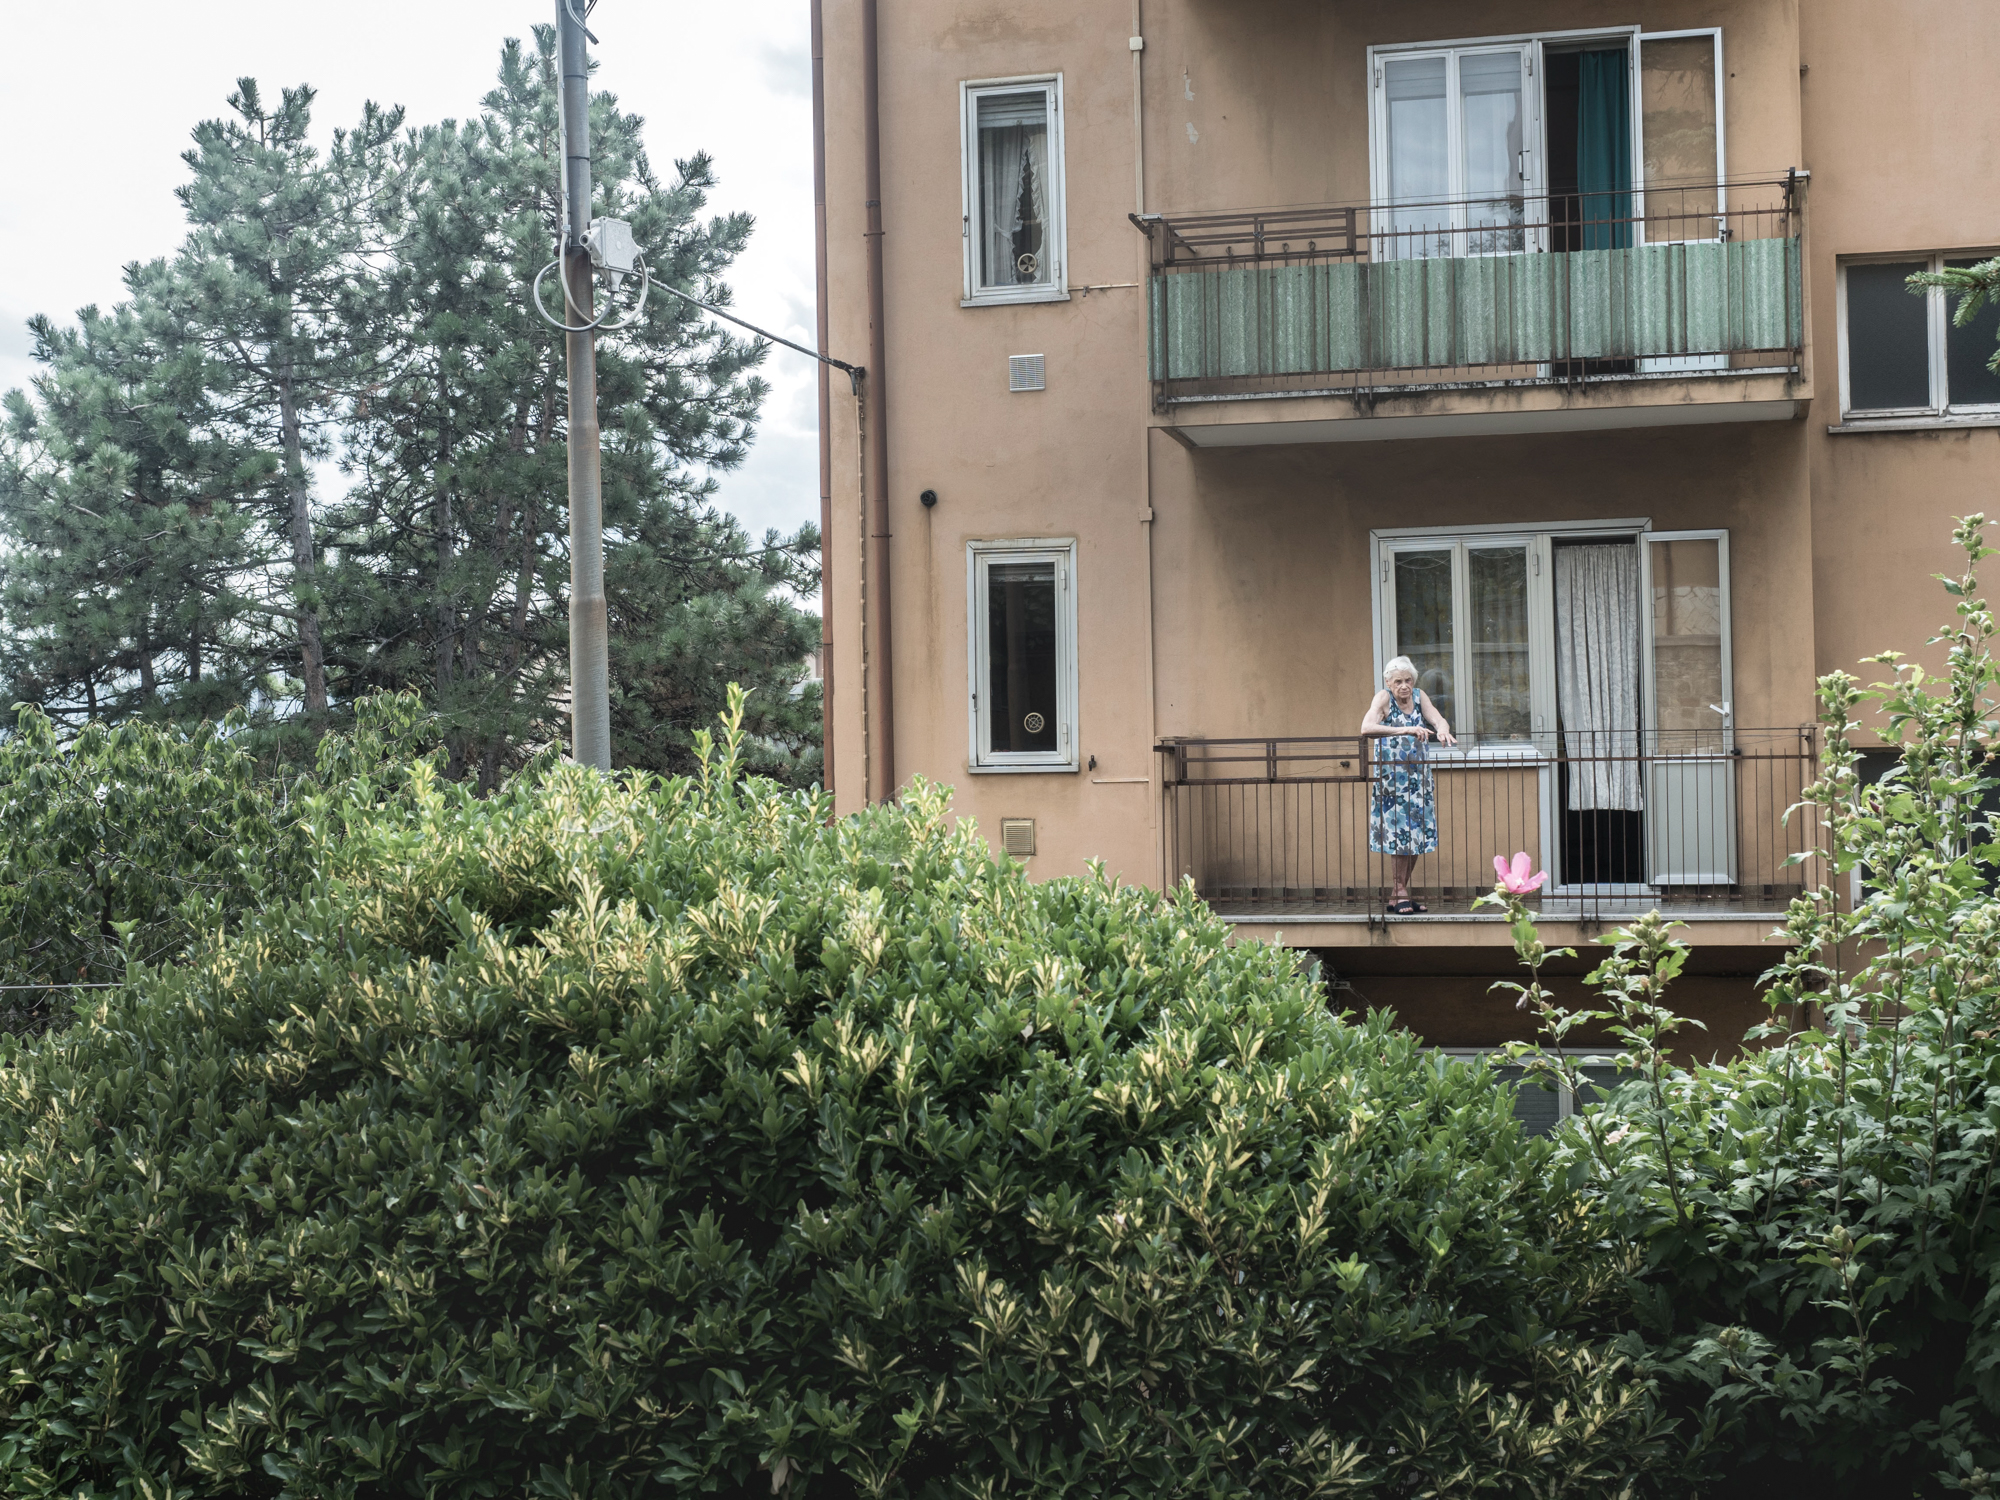  Un'anziana si affaccia dal suo appartamento nel rione di Servola, alle spalle della sua abitazione sorge l'impianto siderurgico, Trieste 2015. 